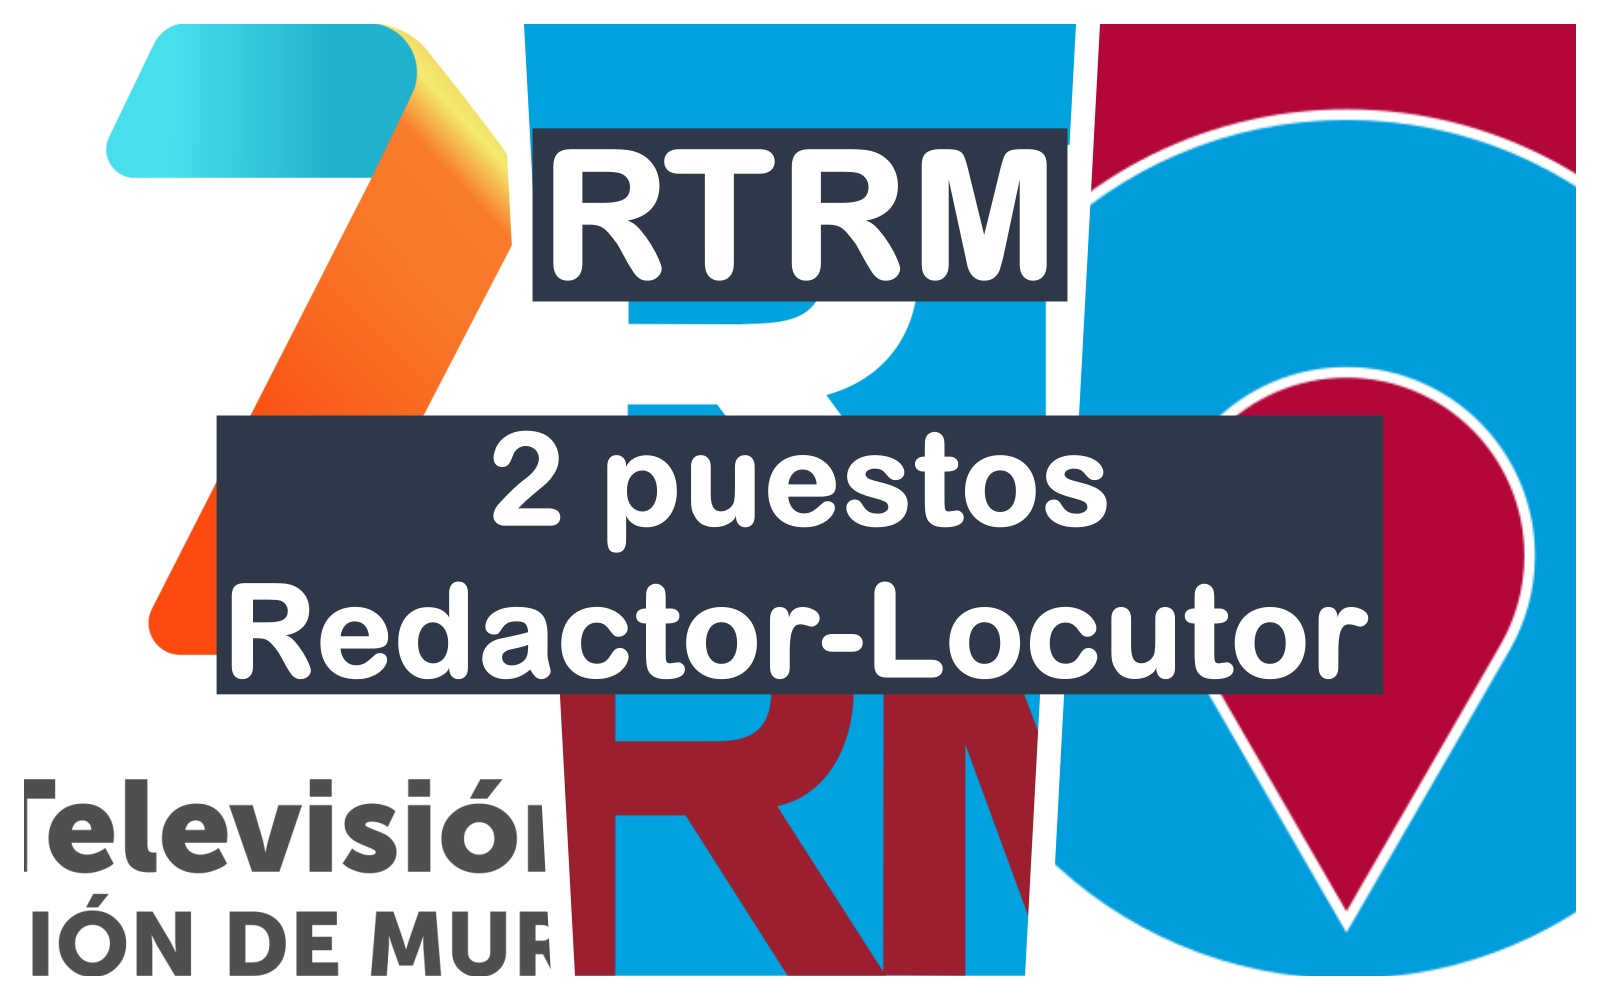 2 puestos de redactor-locutor en RTRM